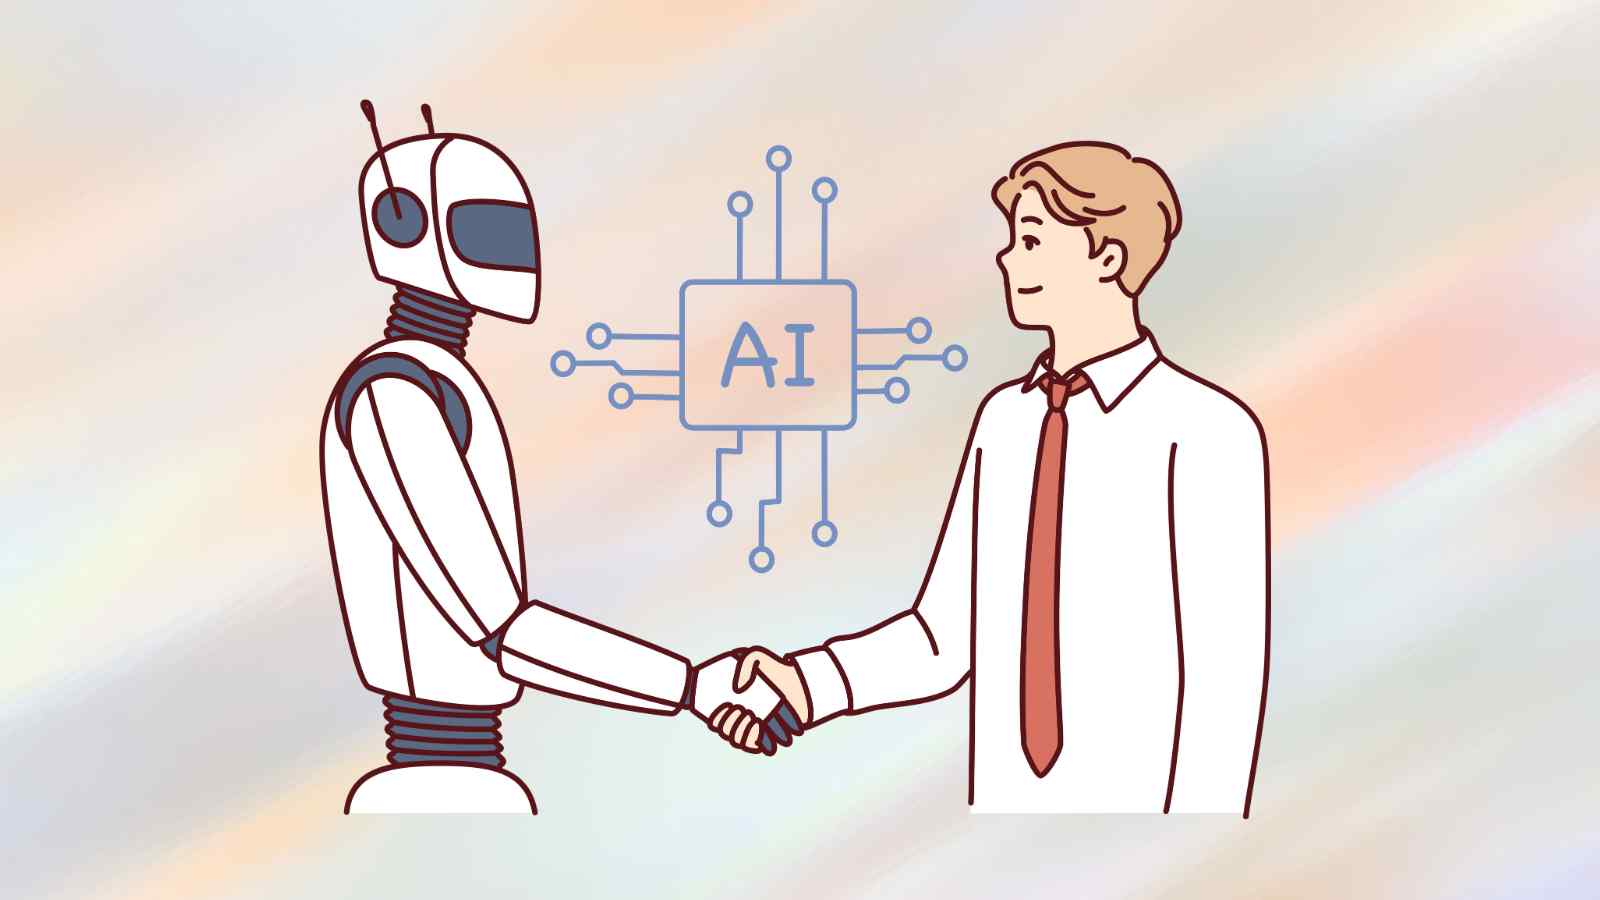 Nuovi studi mettono in comparazione la conversazione umana con quella AI, attraverso un test di Turing che dimostra a che punto siamo.